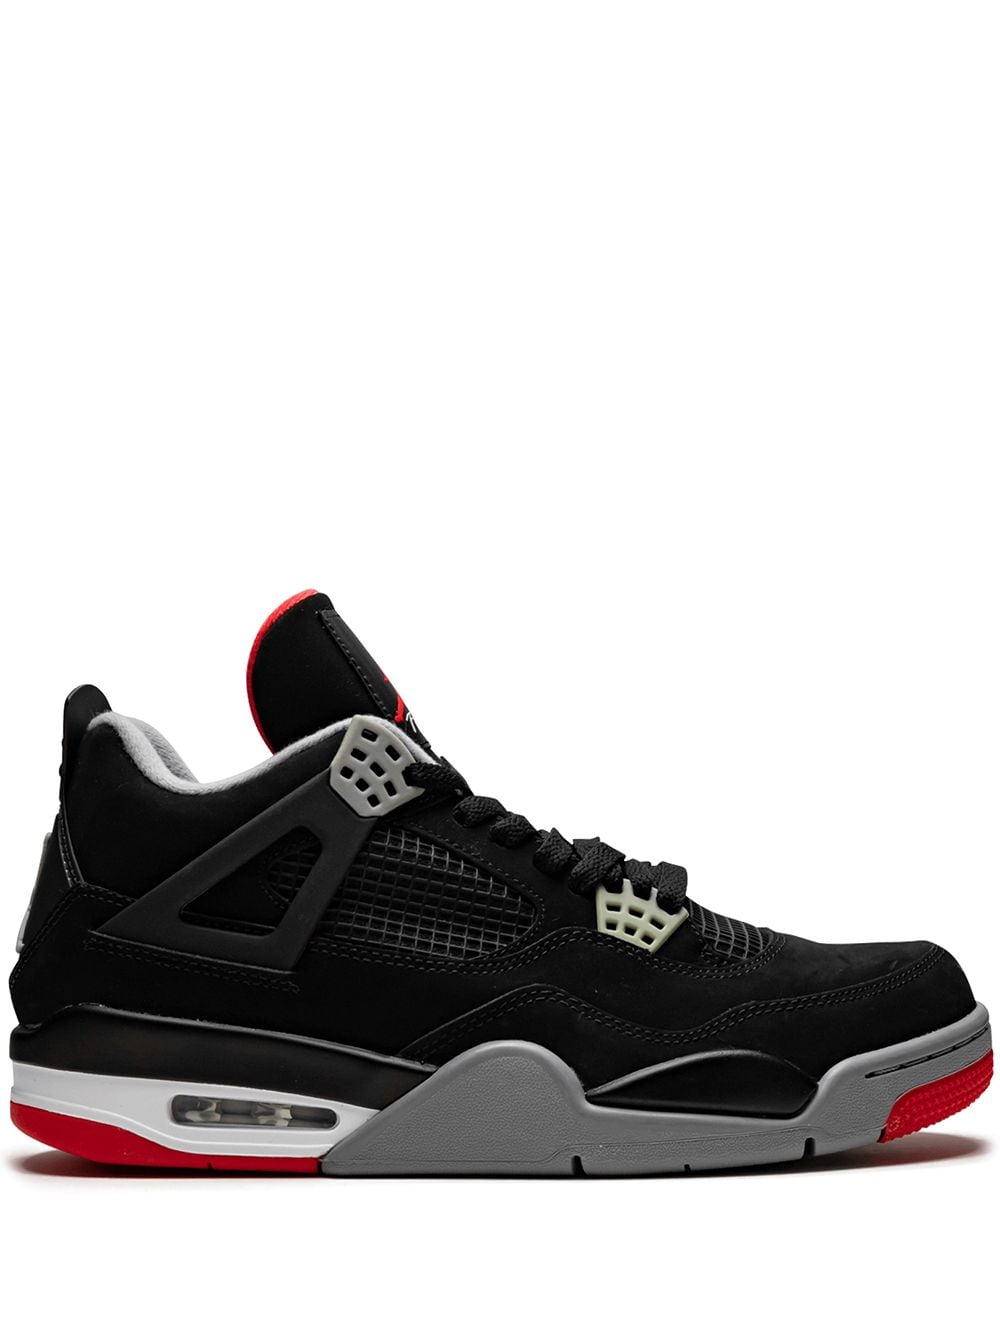 Jordan Air Jordan 4 Retro "Bred" sneakers - Black